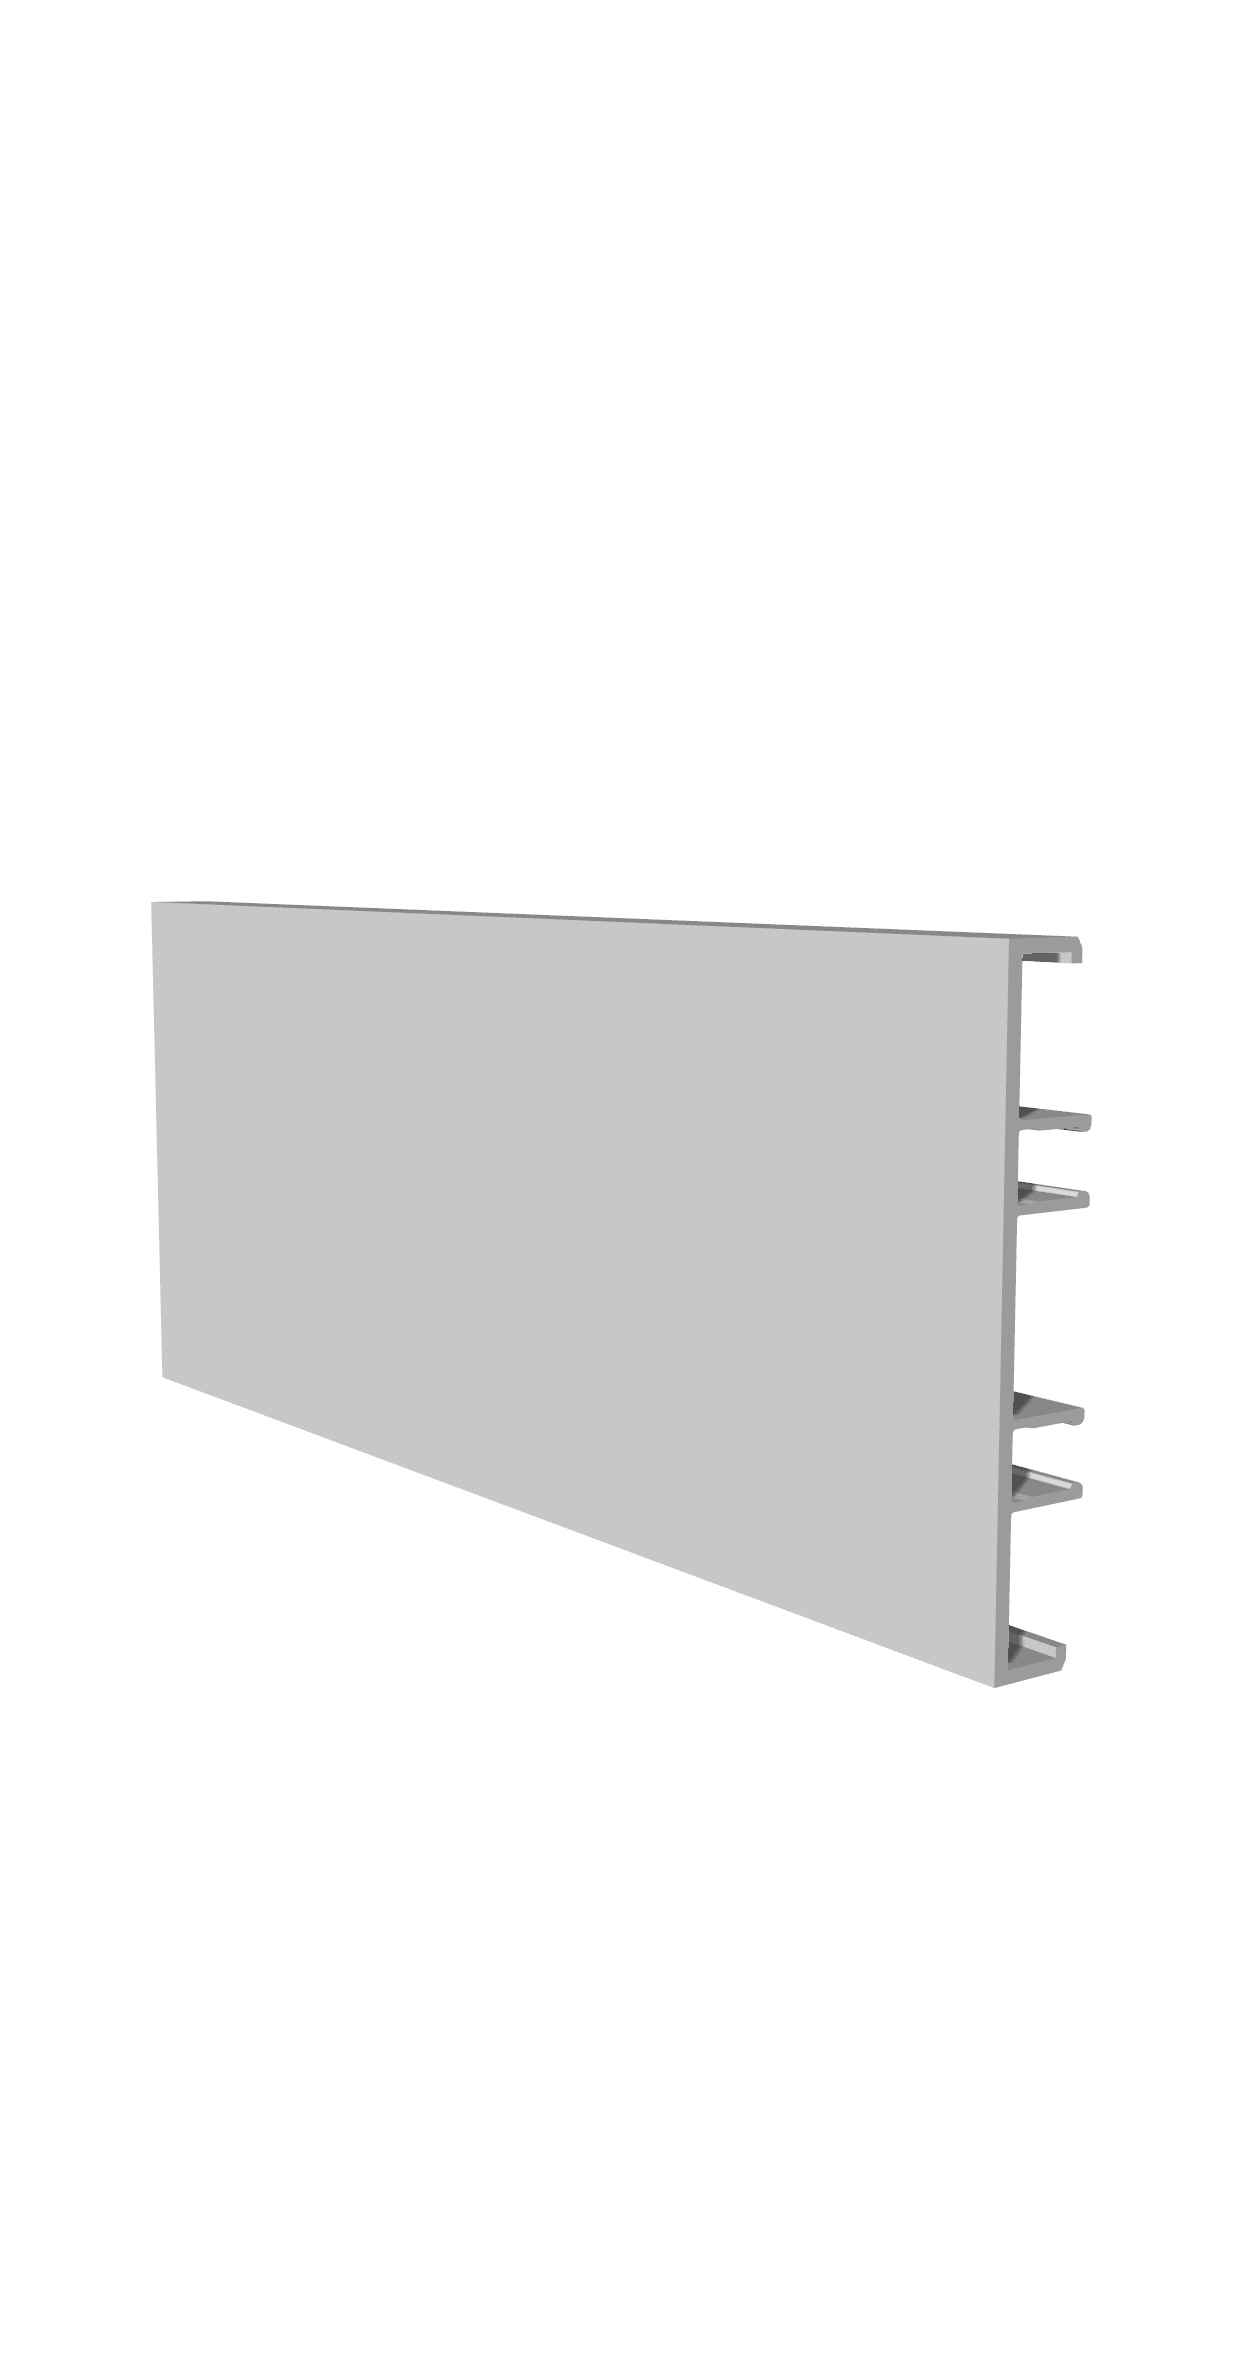 Série 100 | Façades de revêtement intérieur en système de profilés en aluminium